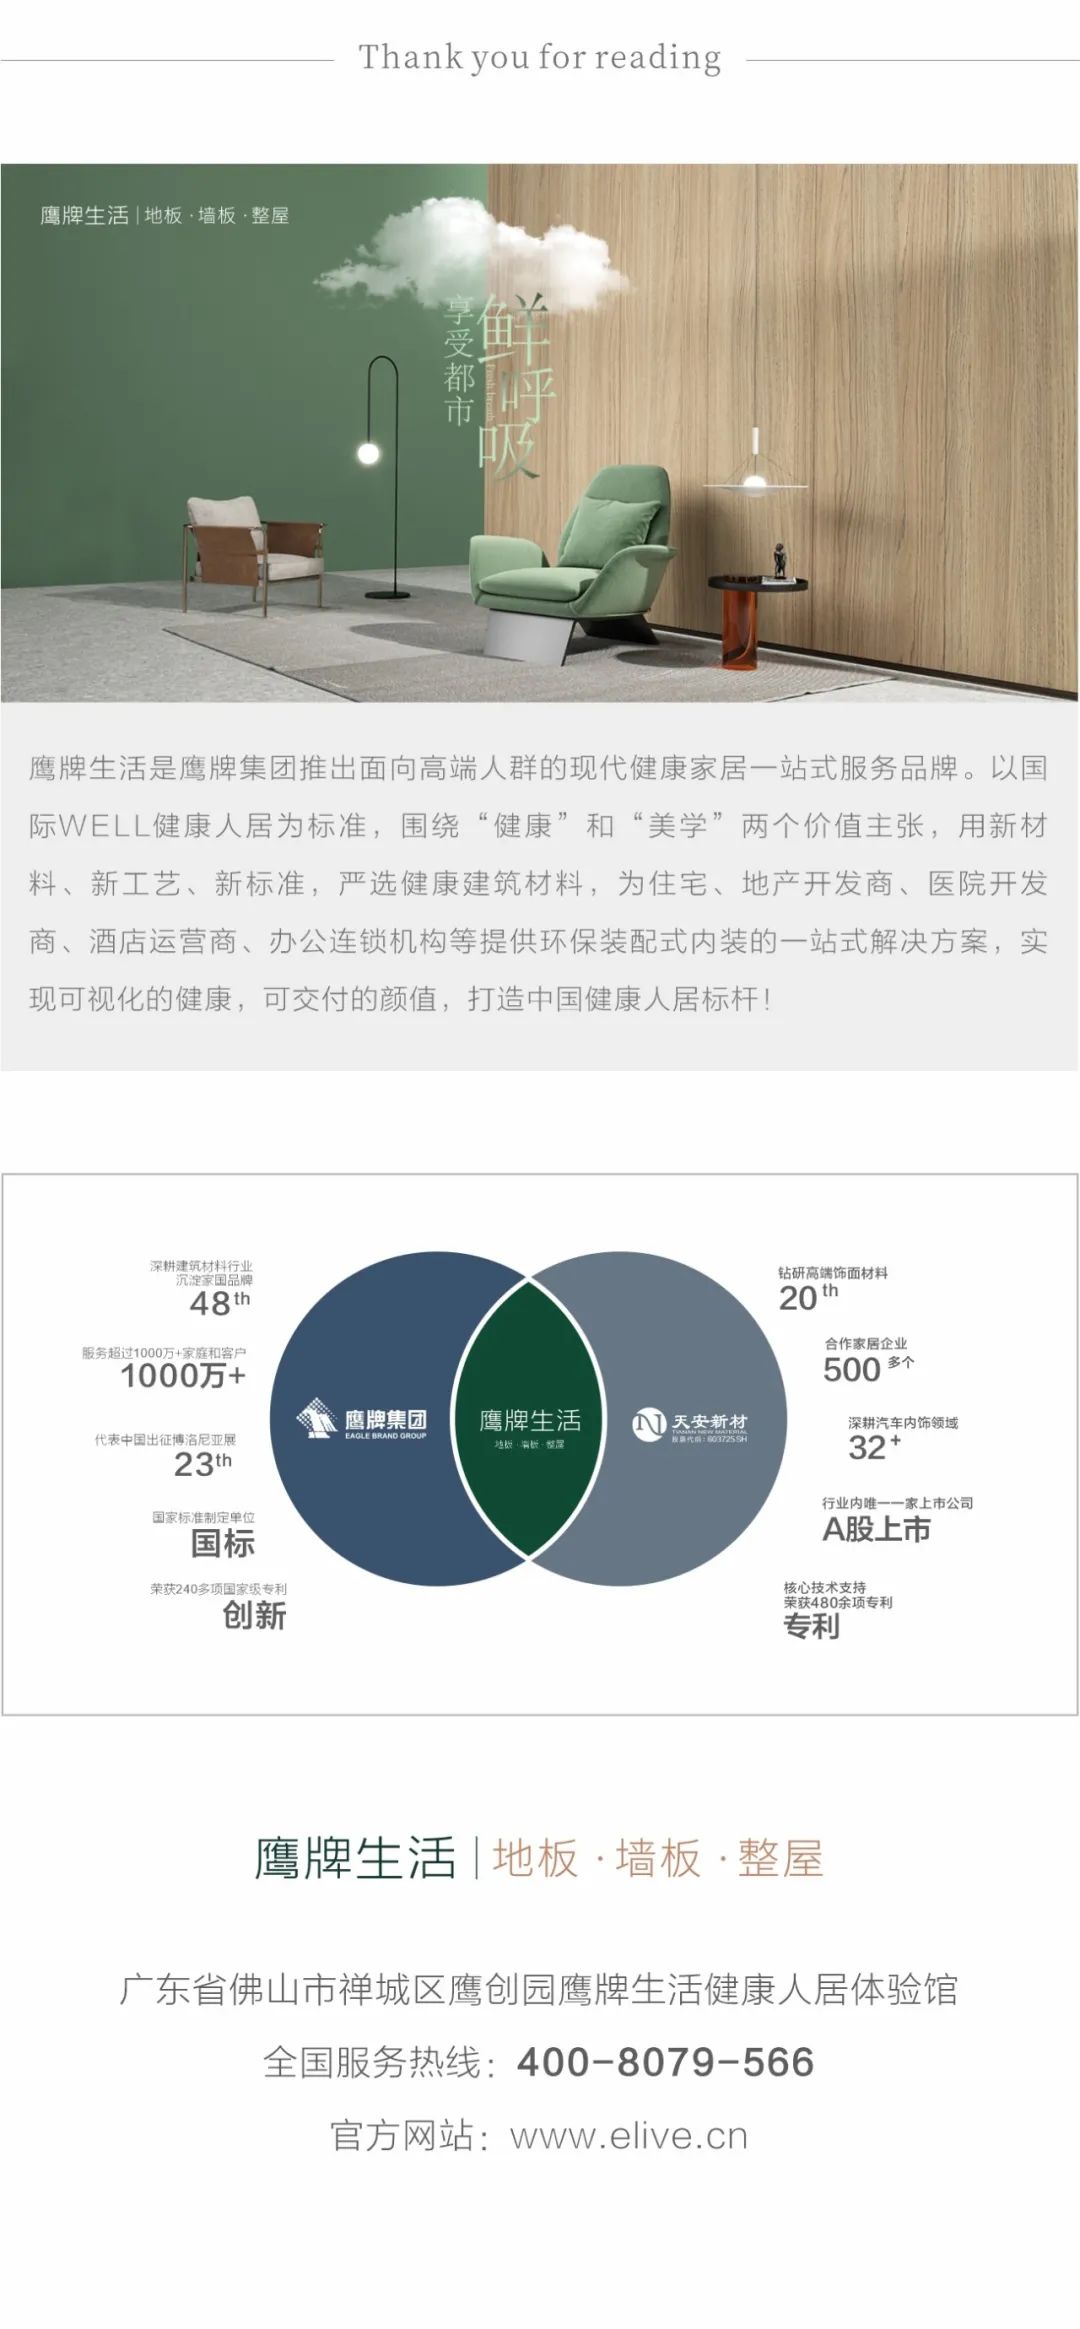 中山大学金融投资与资本运作研修班游学活动走进鹰牌生活(图7)